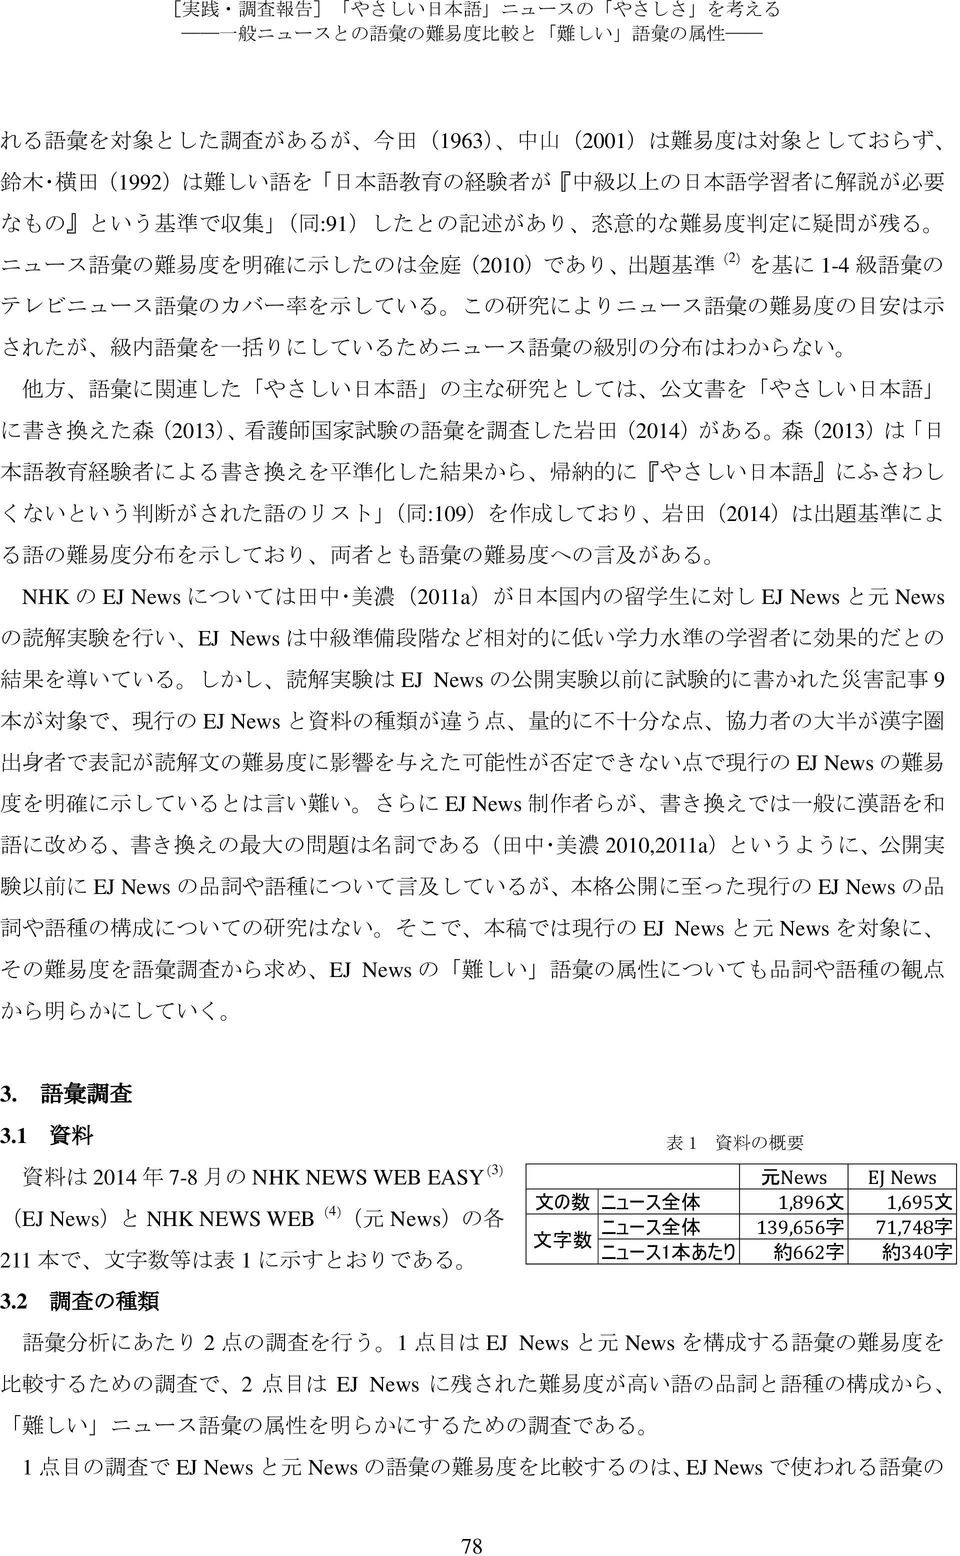 示 されたが 級 内 語 彙 を 一 括 りにしているためニュース 語 彙 の 級 別 の 分 布 はわからない 他 方 語 彙 に 関 連 した やさしい 日 本 語 の 主 な 研 究 としては 公 文 書 を やさしい 日 本 語 に 書 き 換 えた 森 (2013) 看 護 師 国 家 試 験 の 語 彙 を 調 査 した 岩 田 (2014)がある 森 (2013)は 日 本 語 教